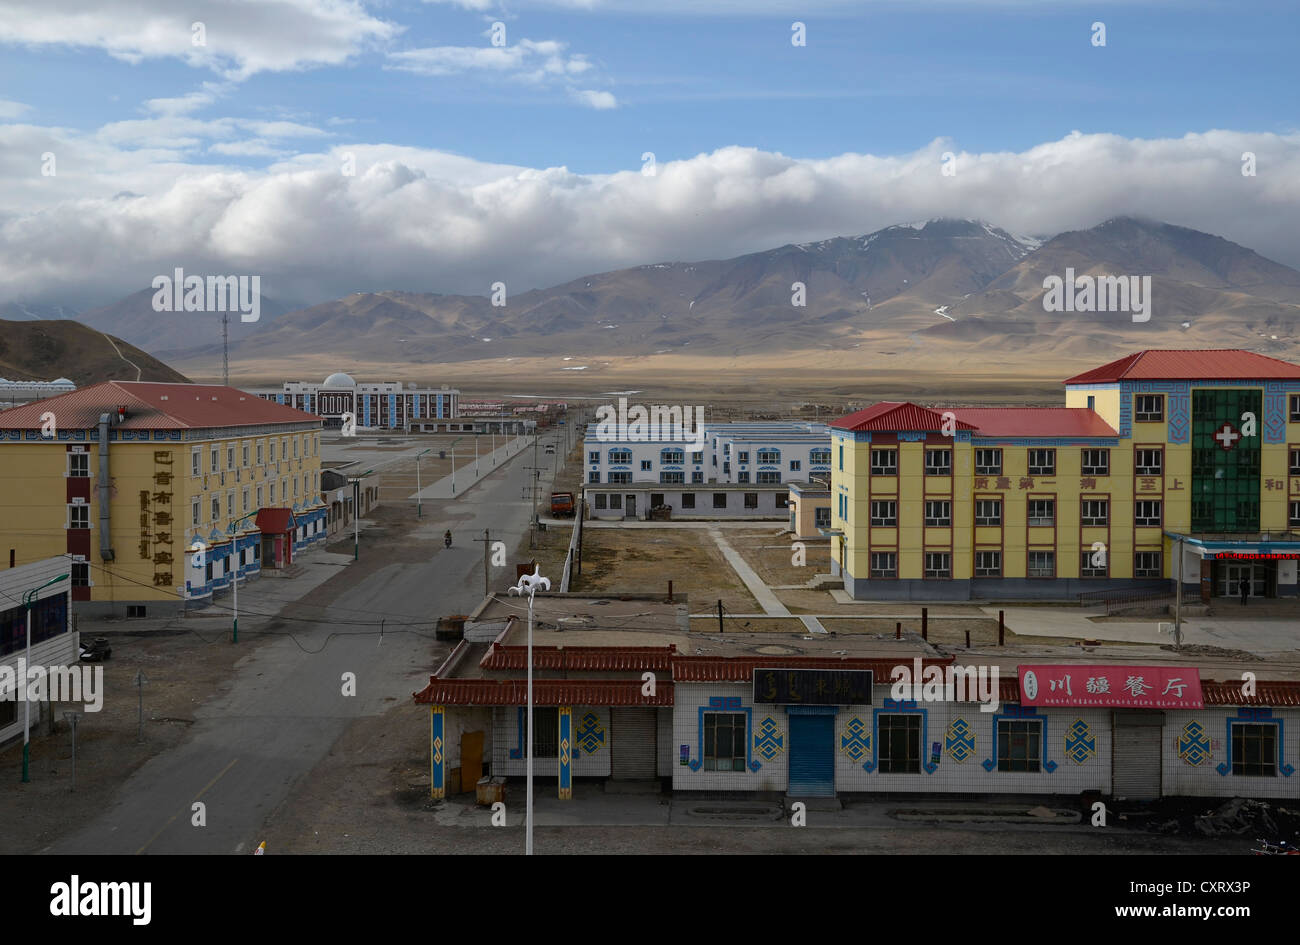 Bayanbulak, Bayingolin Mongol Autonomous Prefecture, Kuqa, Silk Road, Tianshan Mountains, Tien Shan, Xinjiang, China, Asia Stock Photo